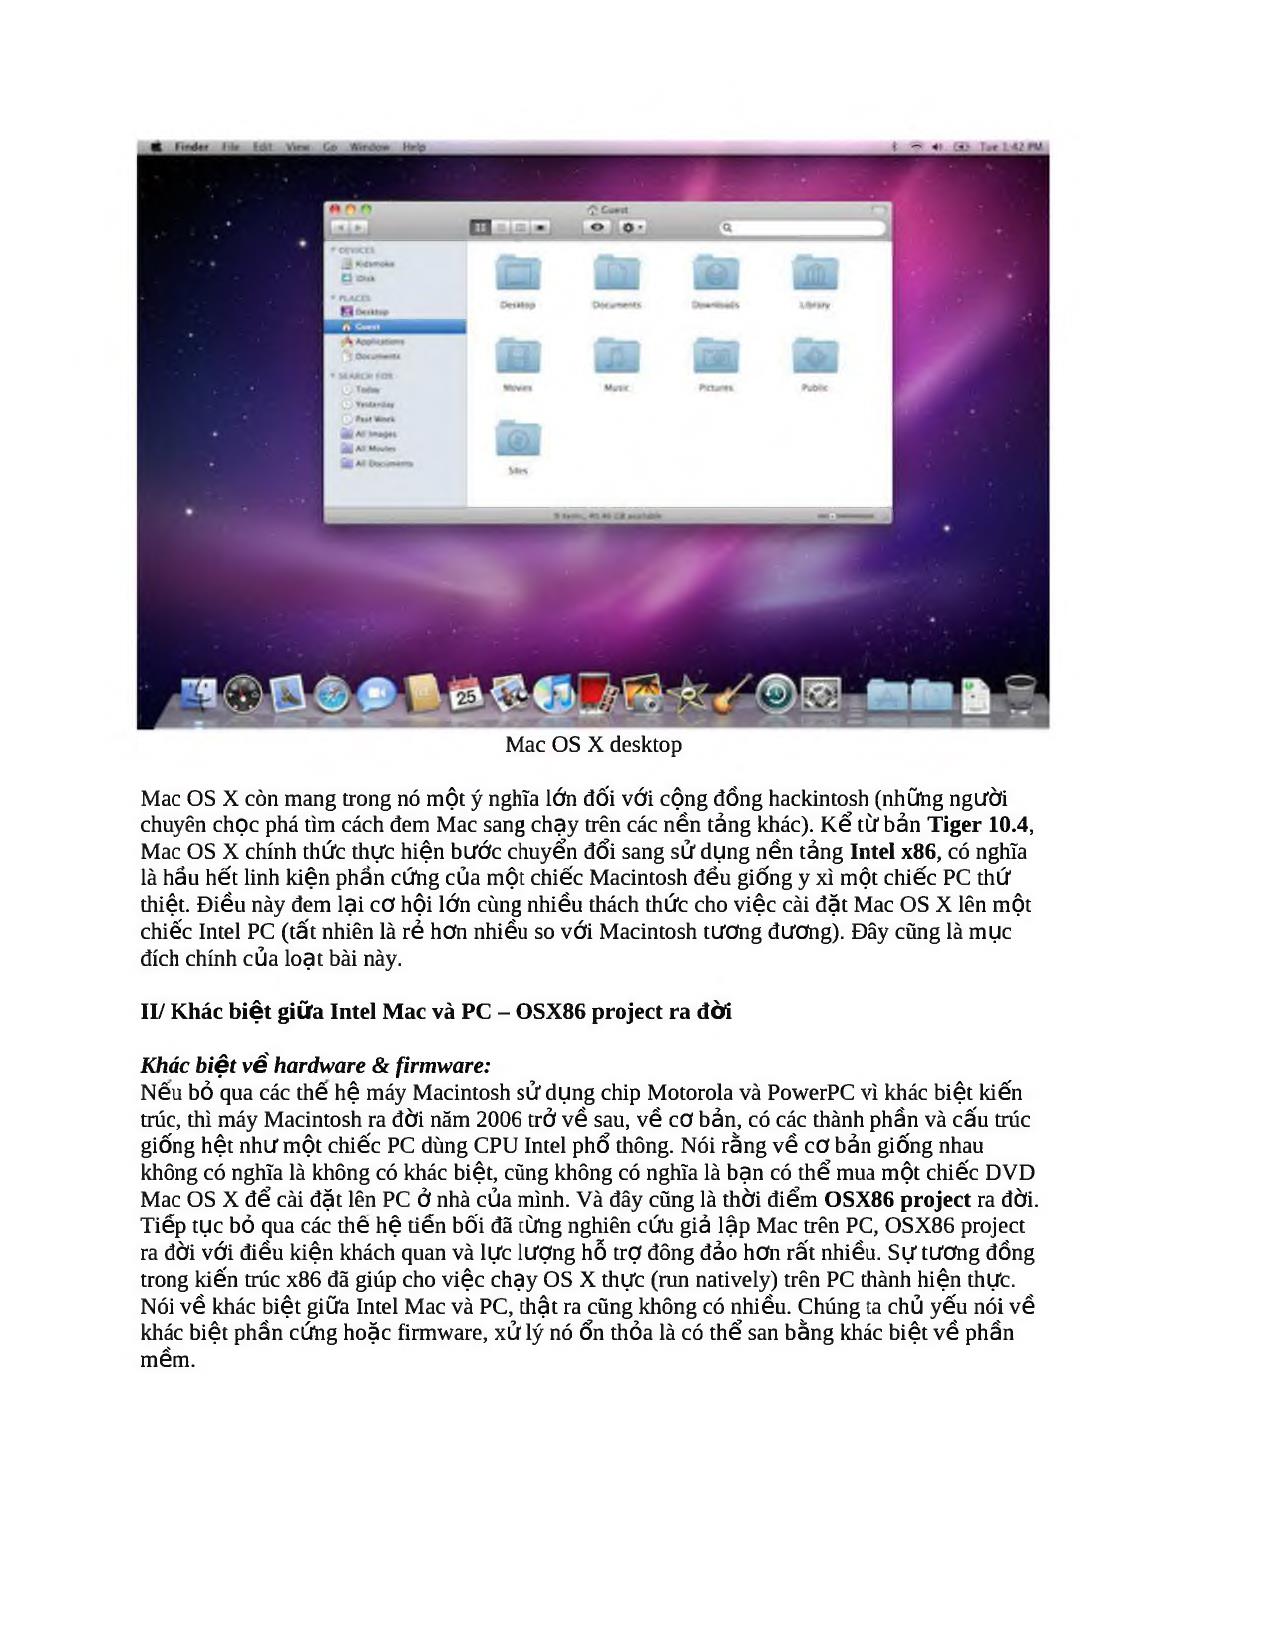 Hướng dẫn cài đặt Mac OS trên PC toàn tập - Phần 1: Lịch sử và nguyên nhân trang 3